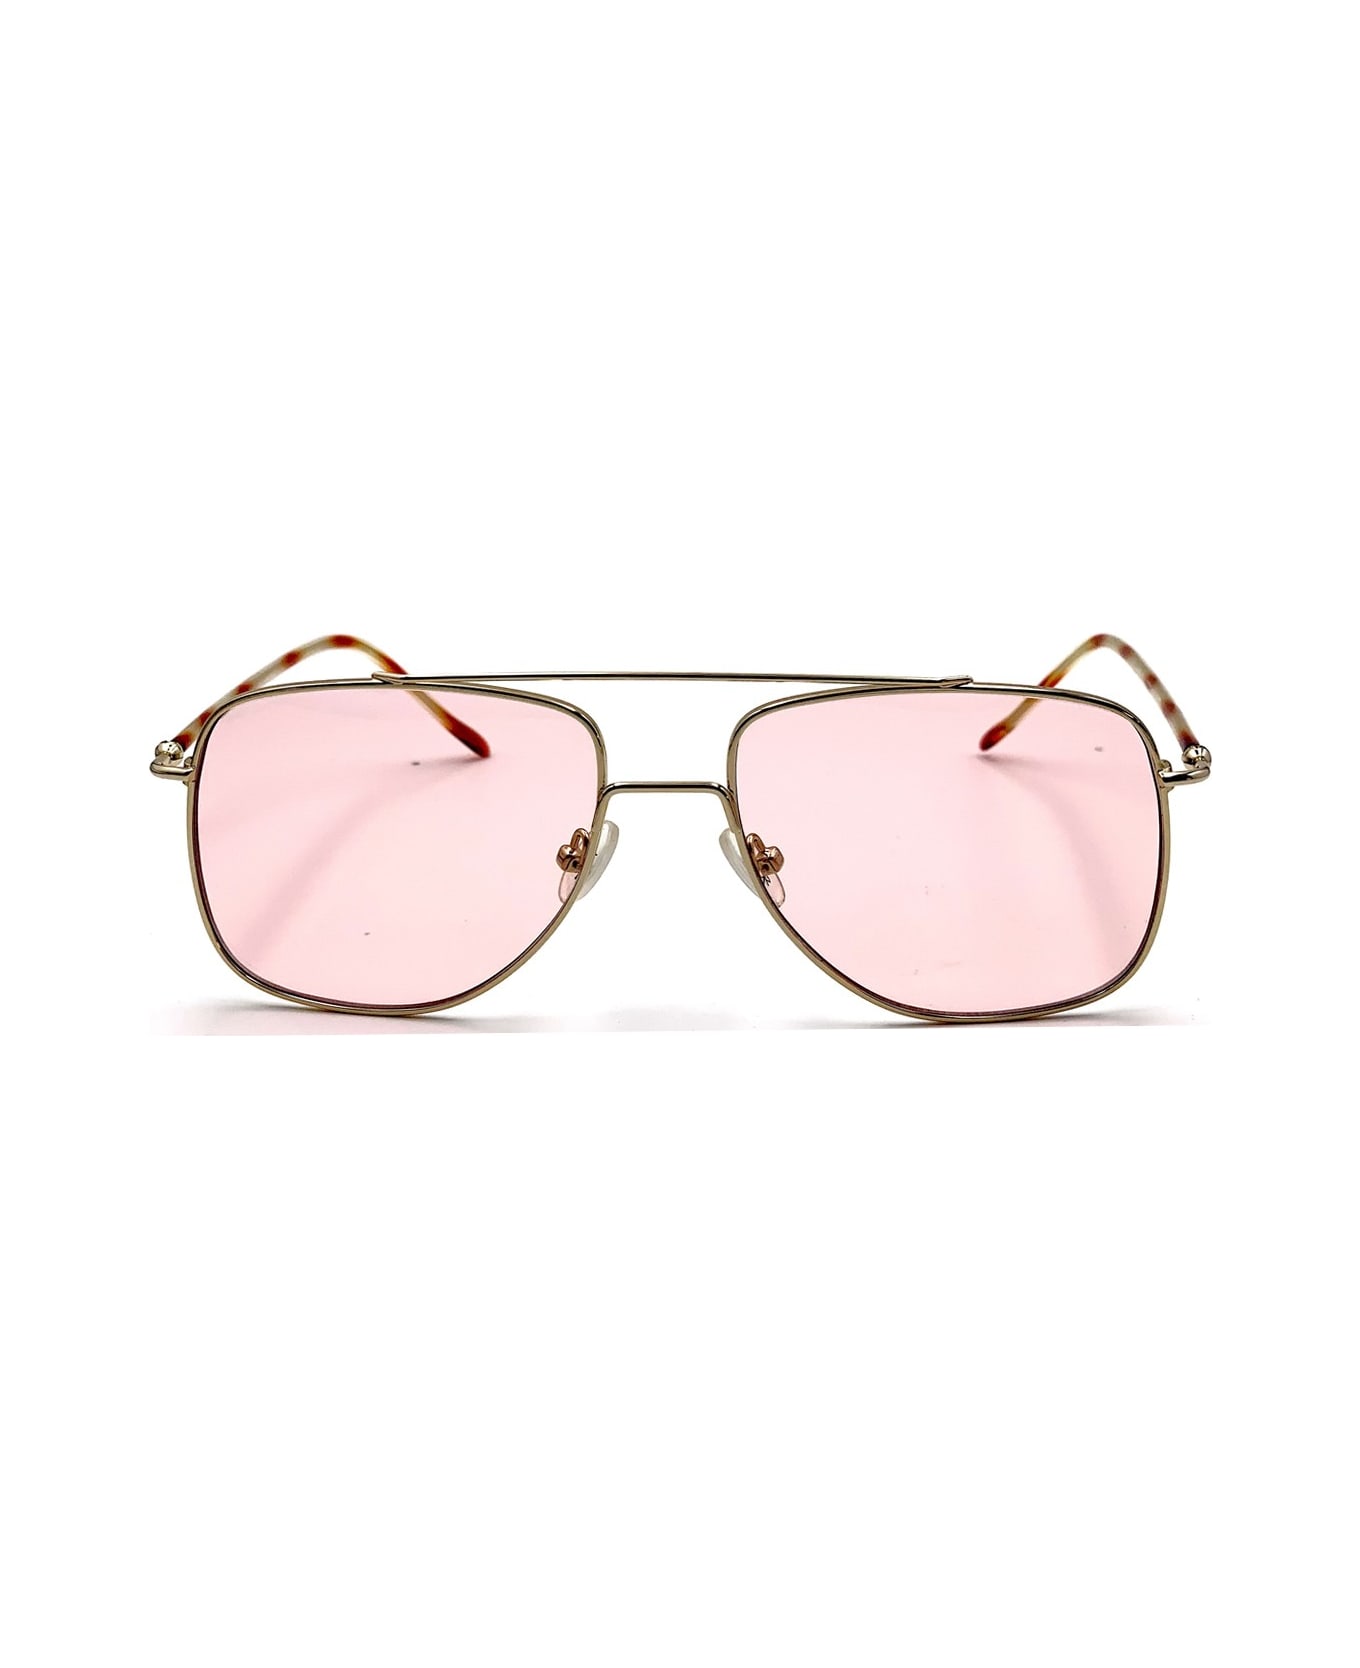 Spektre Maranello Sunglasses - Oro